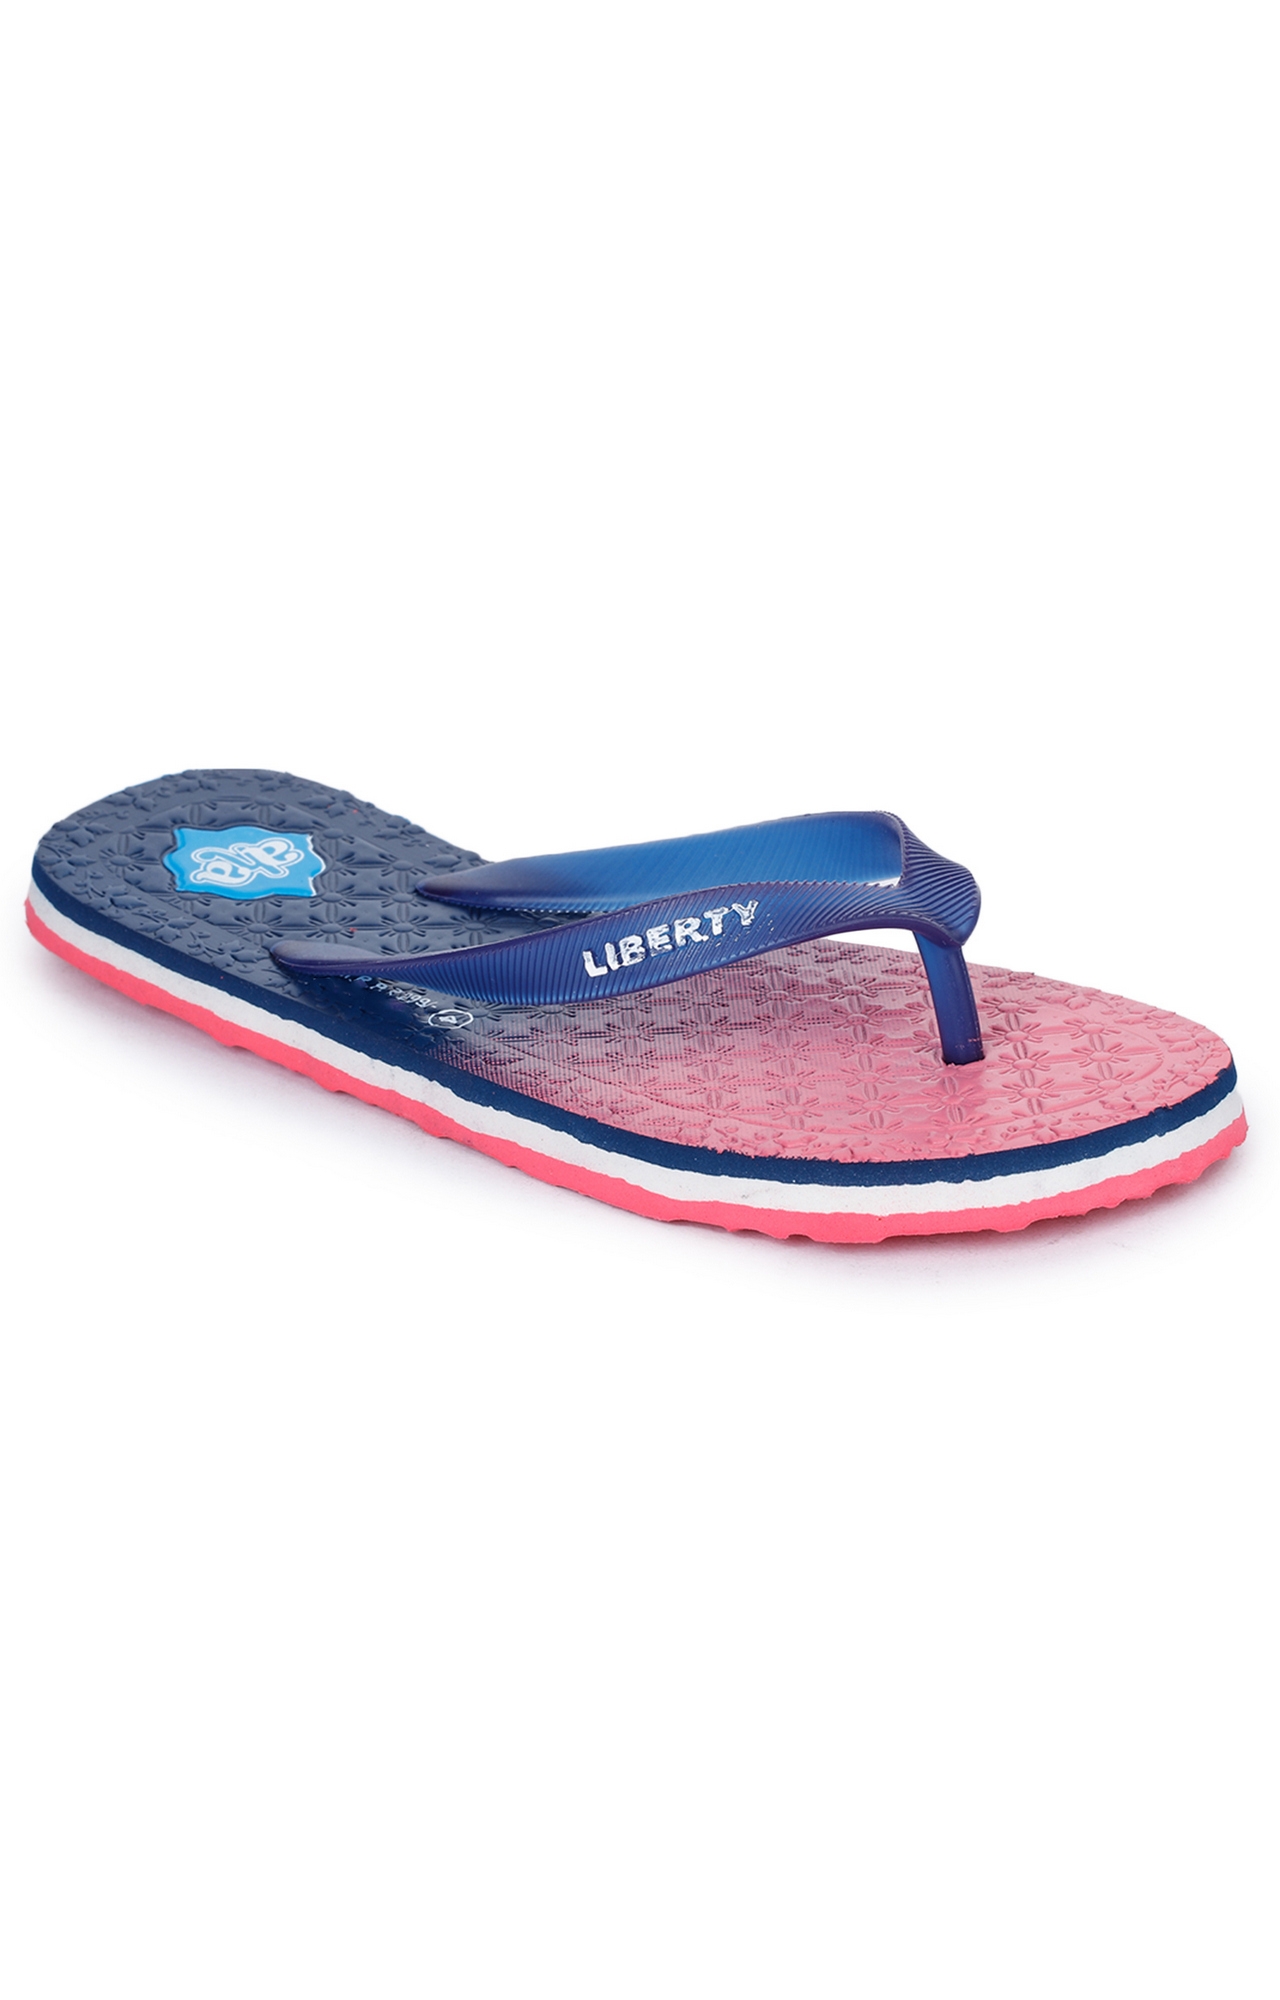 Liberty | Liberty A-HA Navy Flip Flops